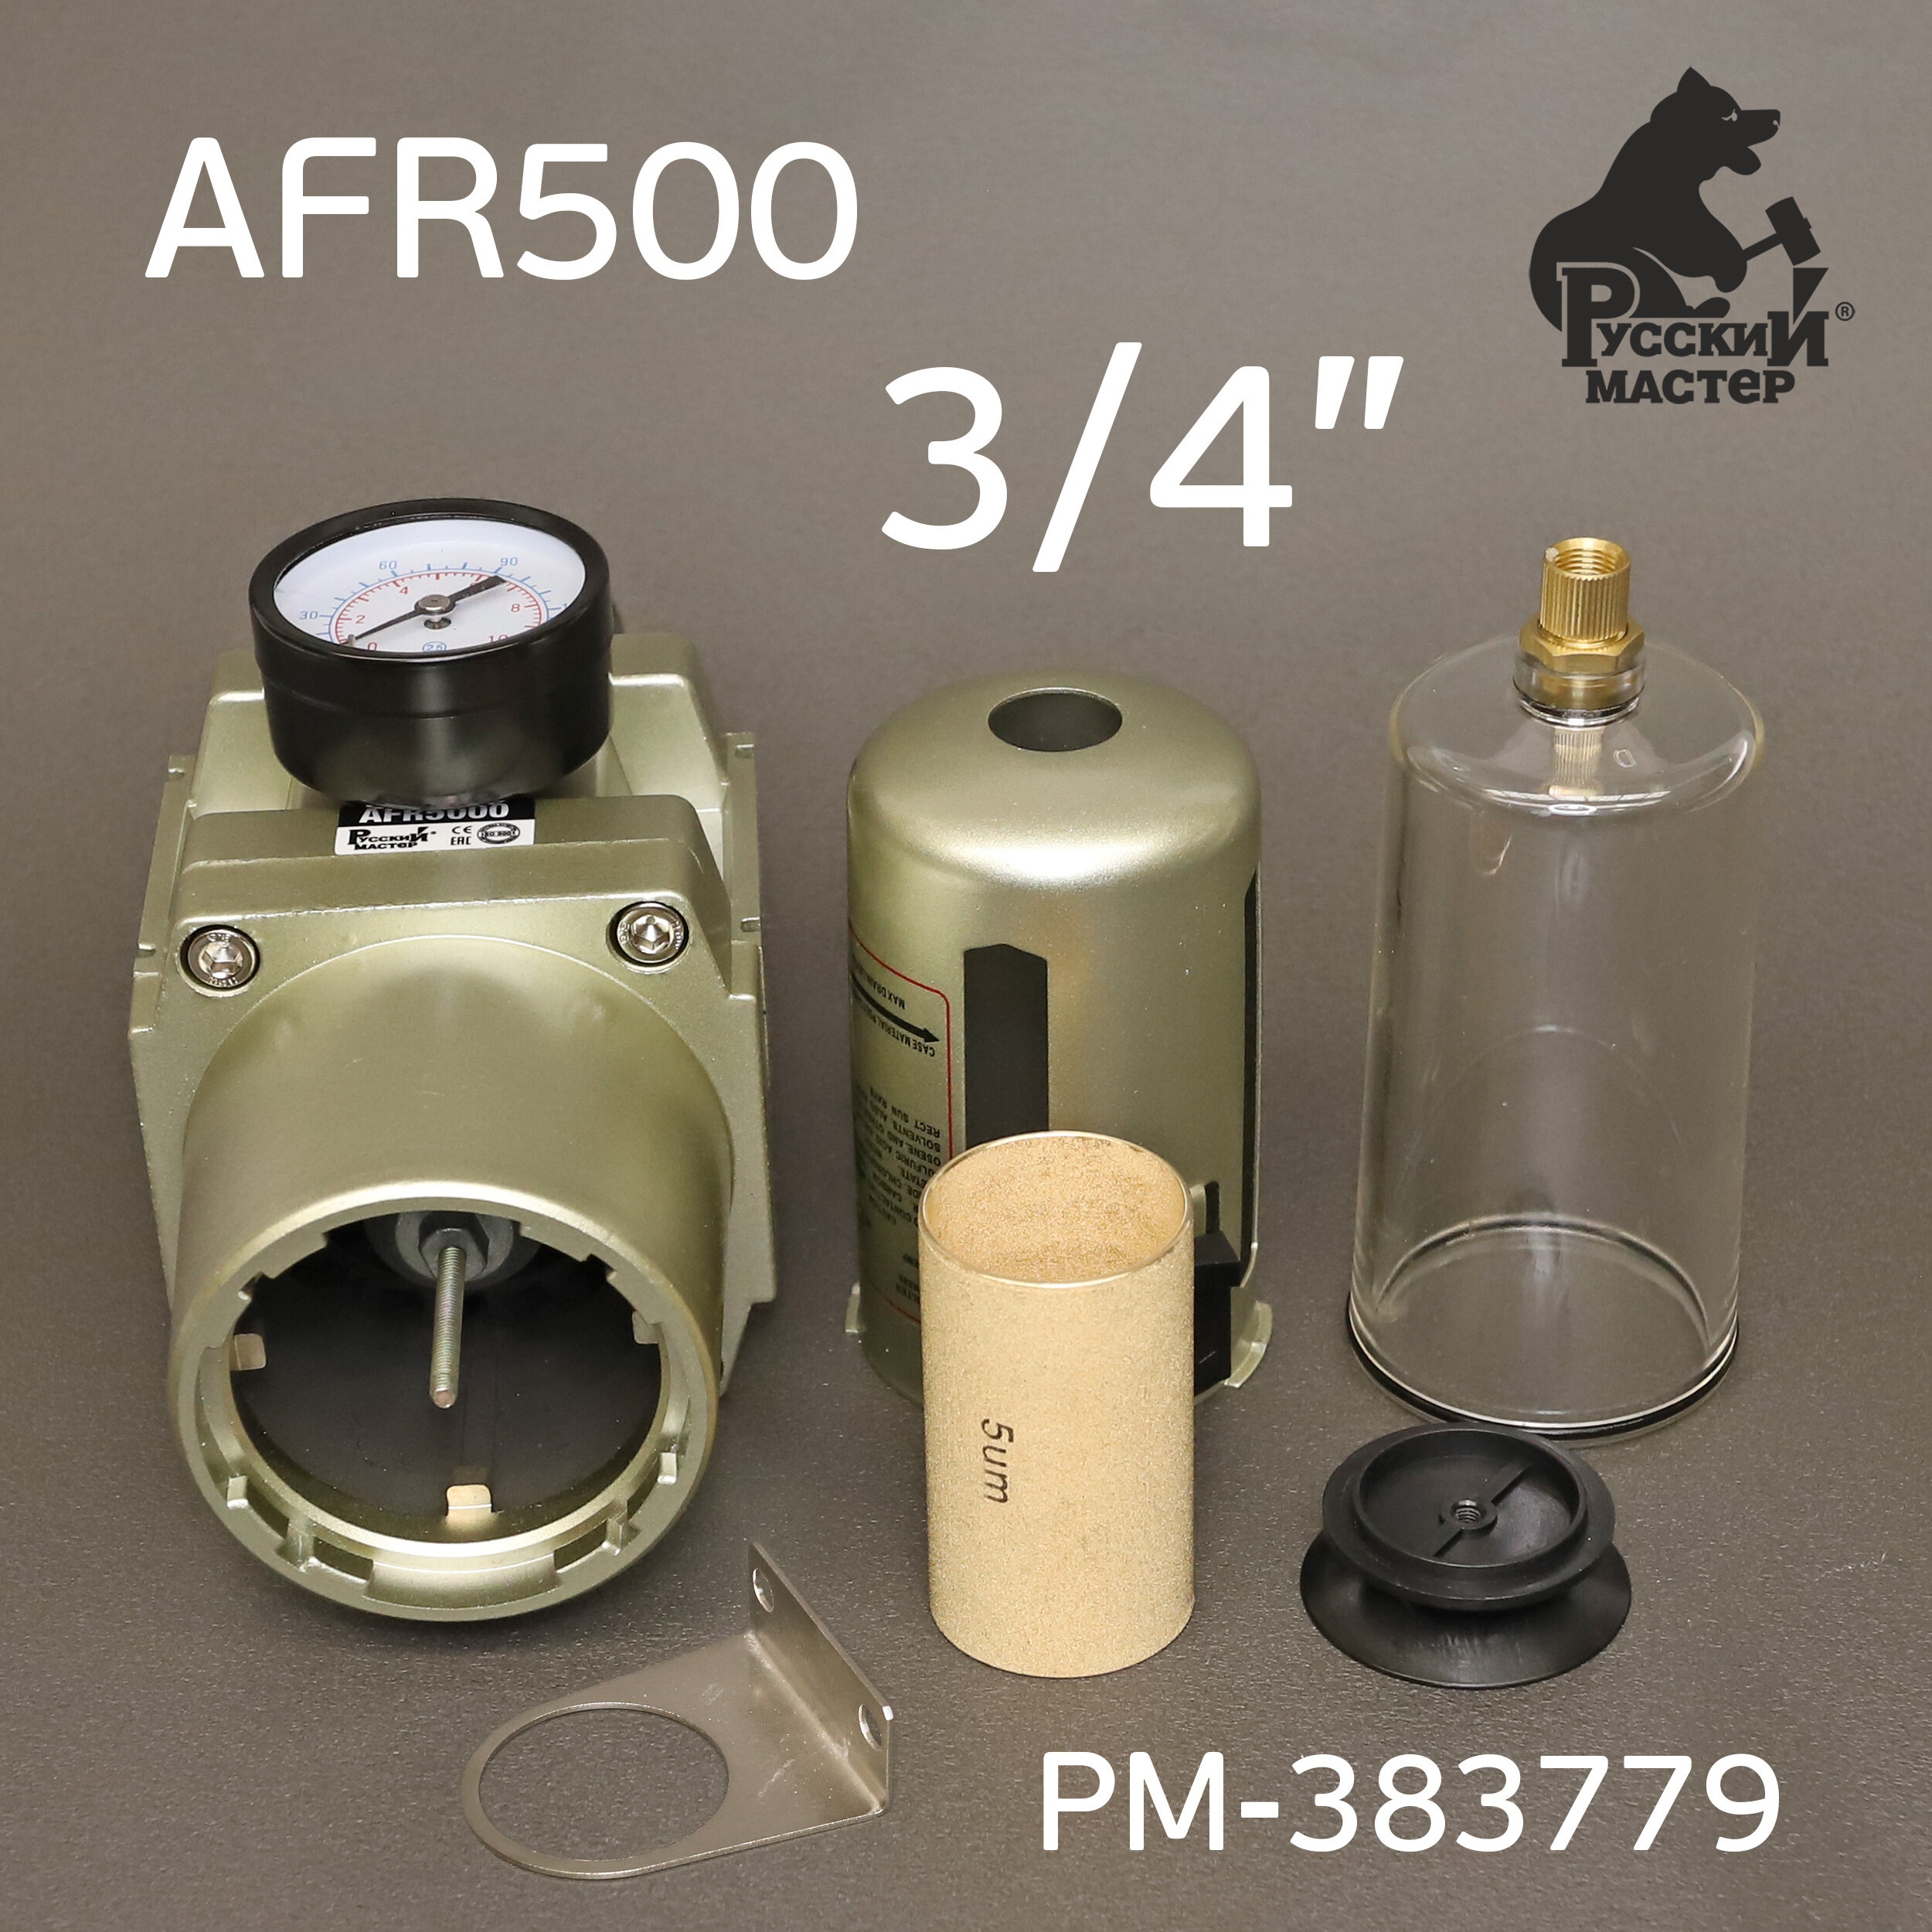 Фильтр-редуктор 3/4" AFR5000 Русский Мастер РМ-383779